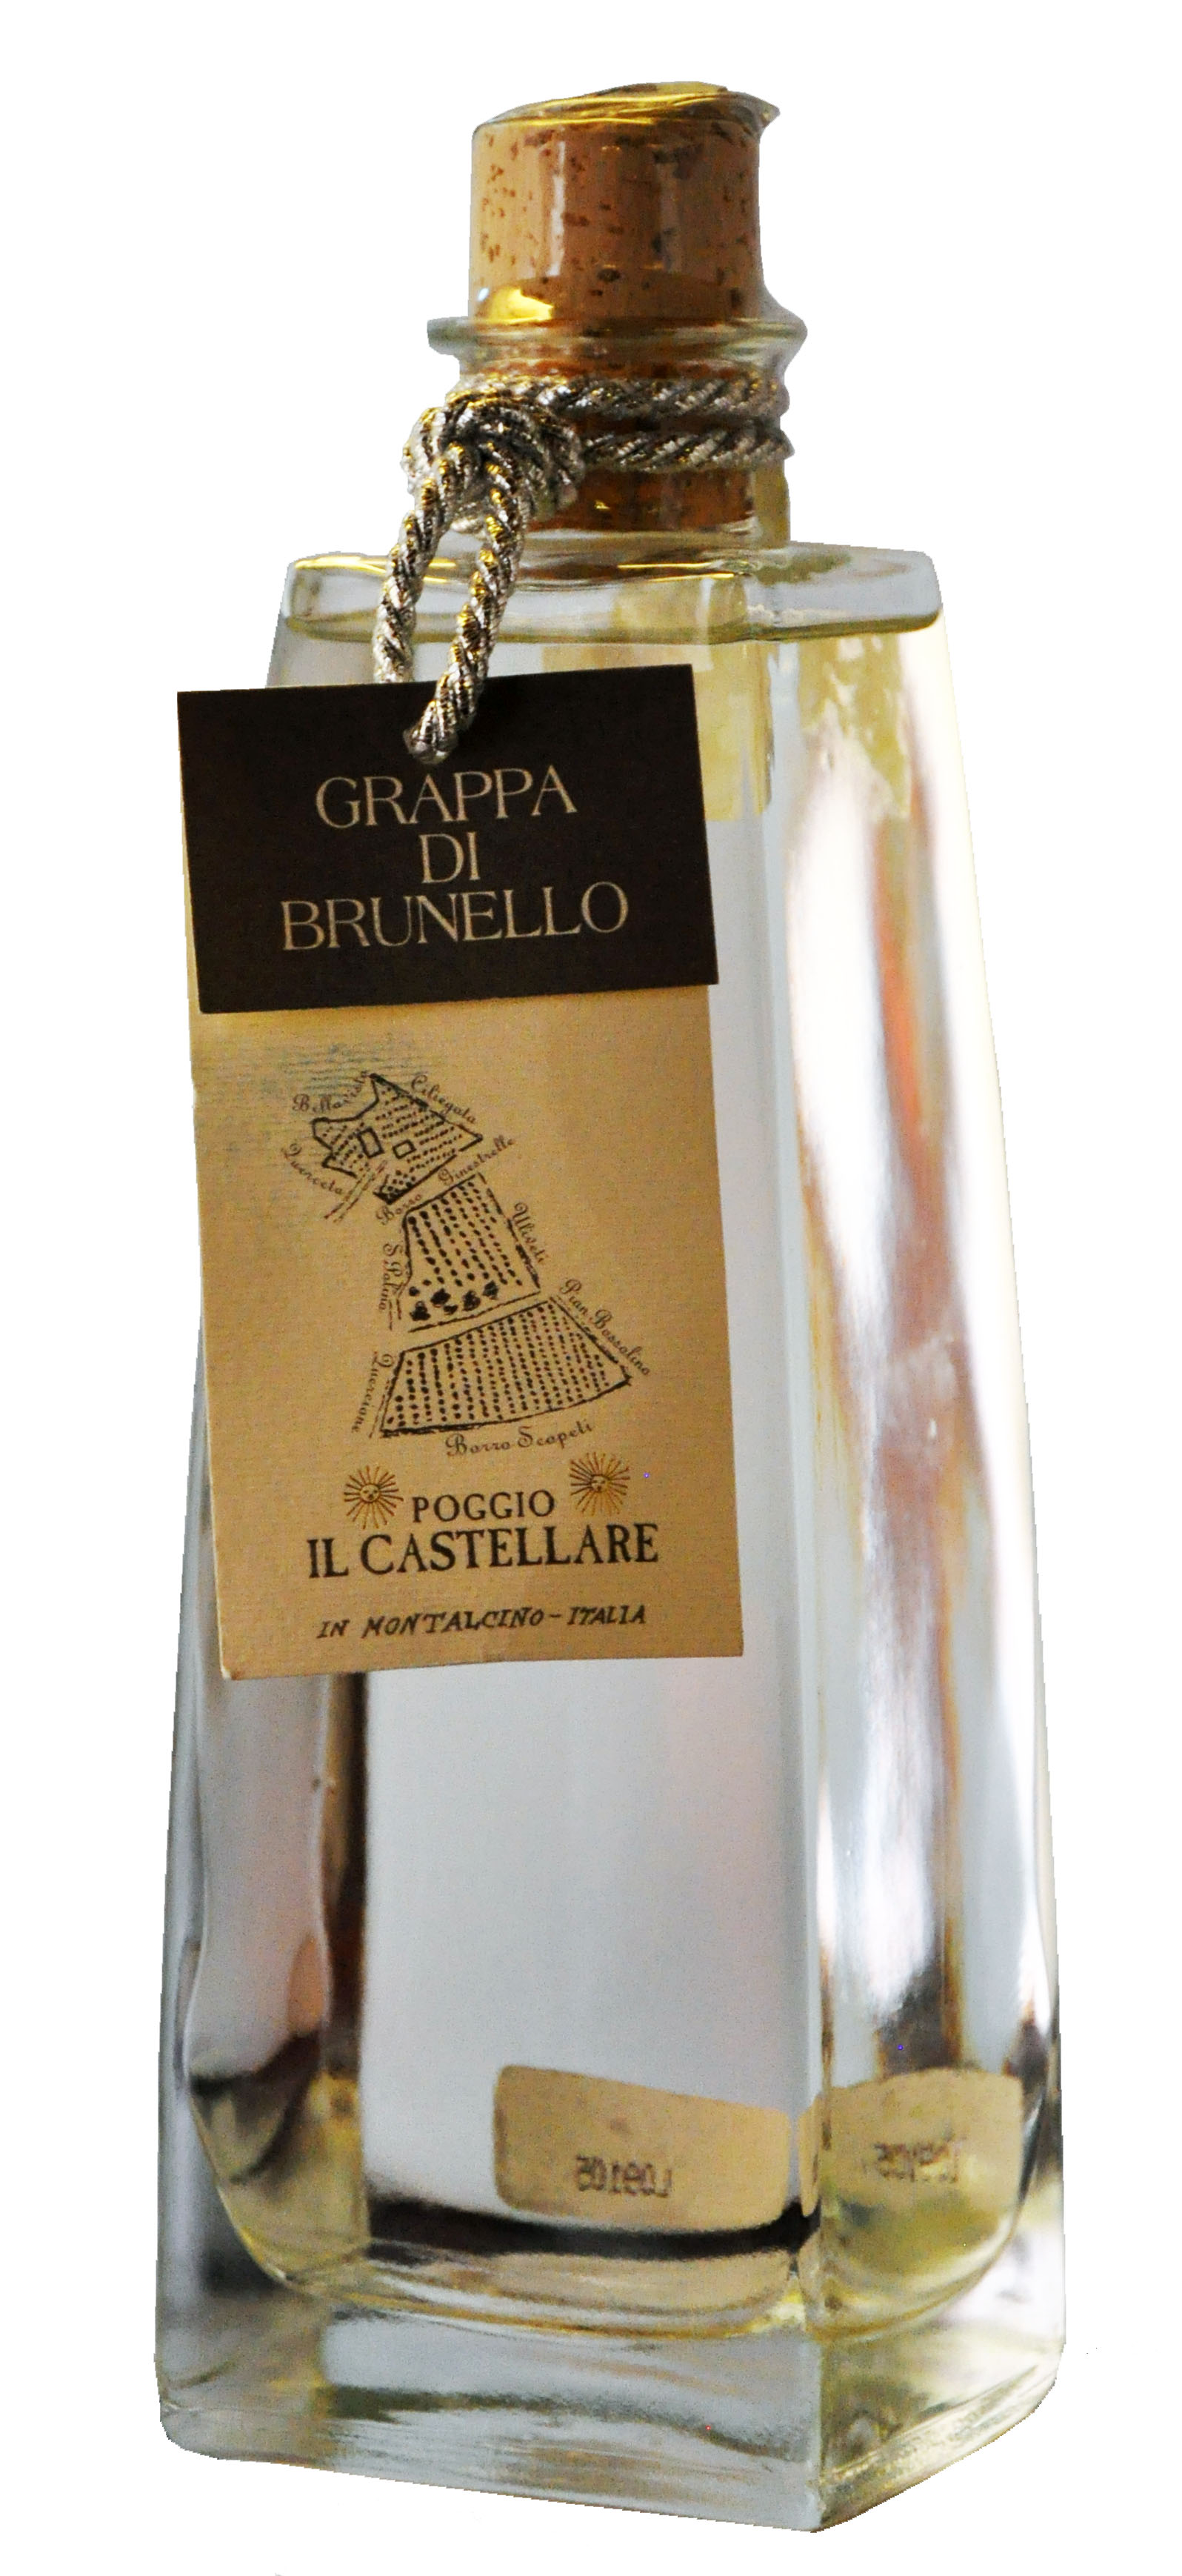 Grappa di Brunello "Poggio il Castellare" 43% Vol.